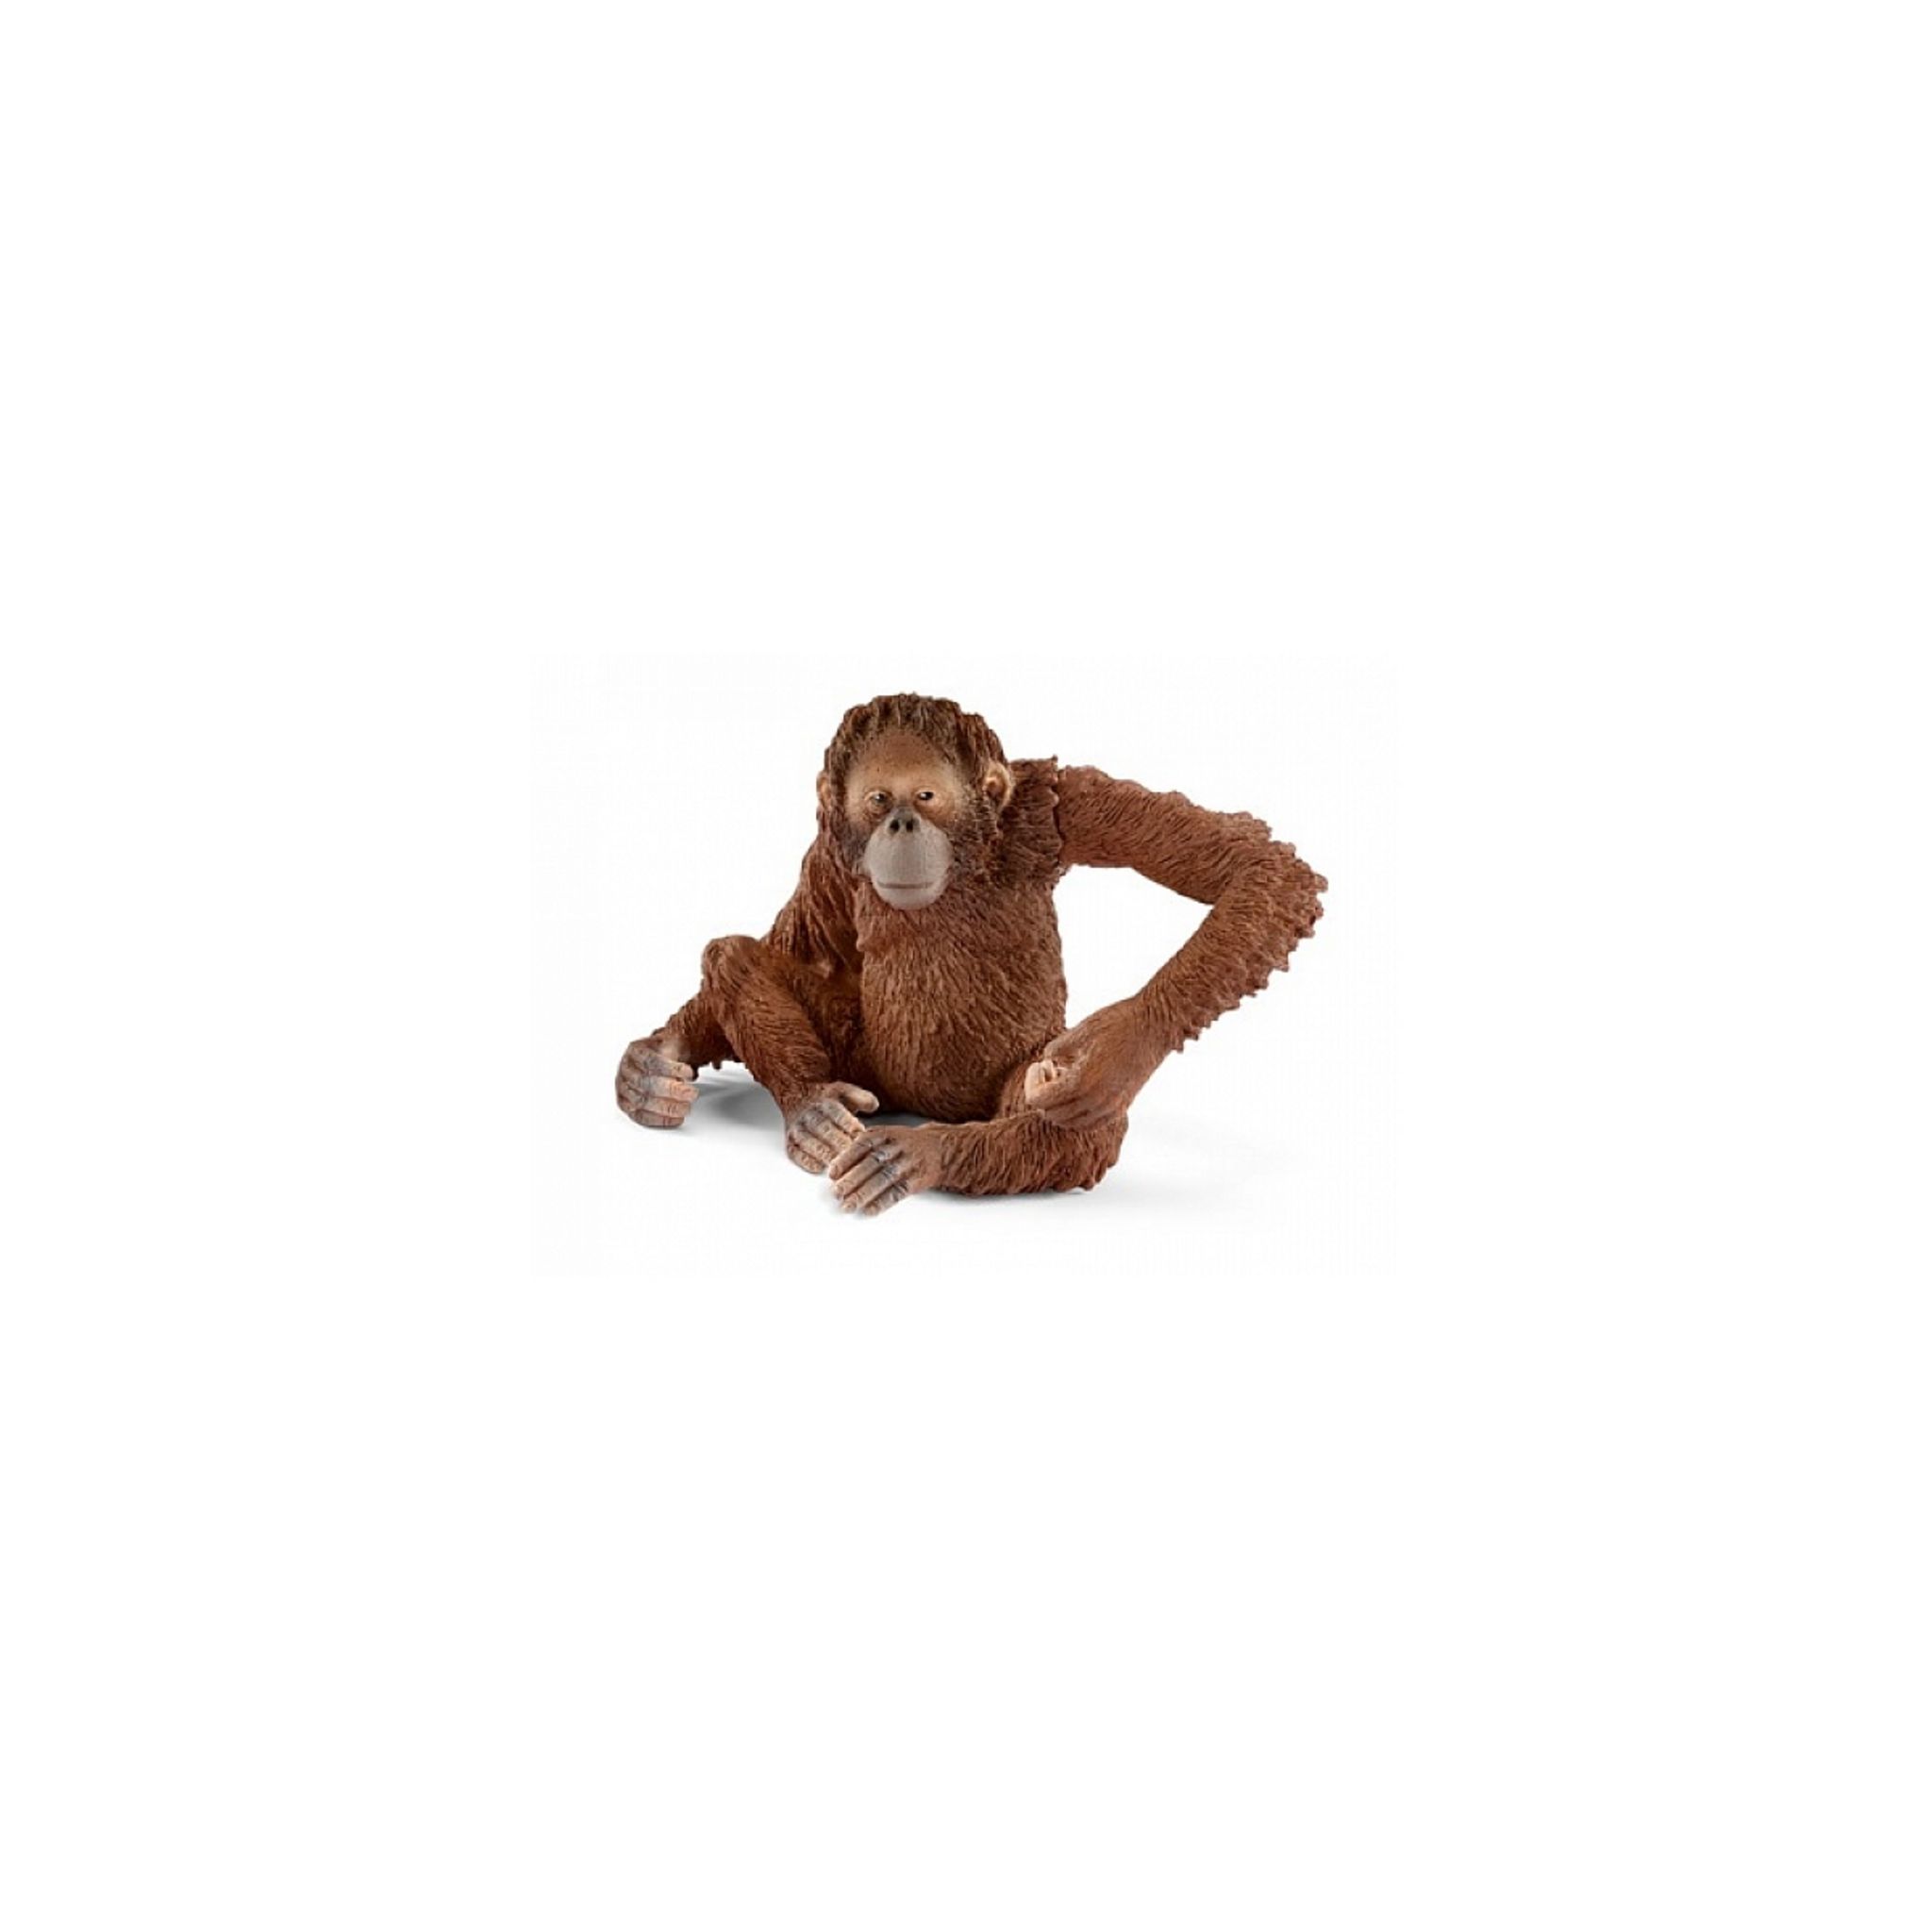 Wild vie plastique Figure Schleich 14775 orang-outan femelle avec manchon amovible Bras 